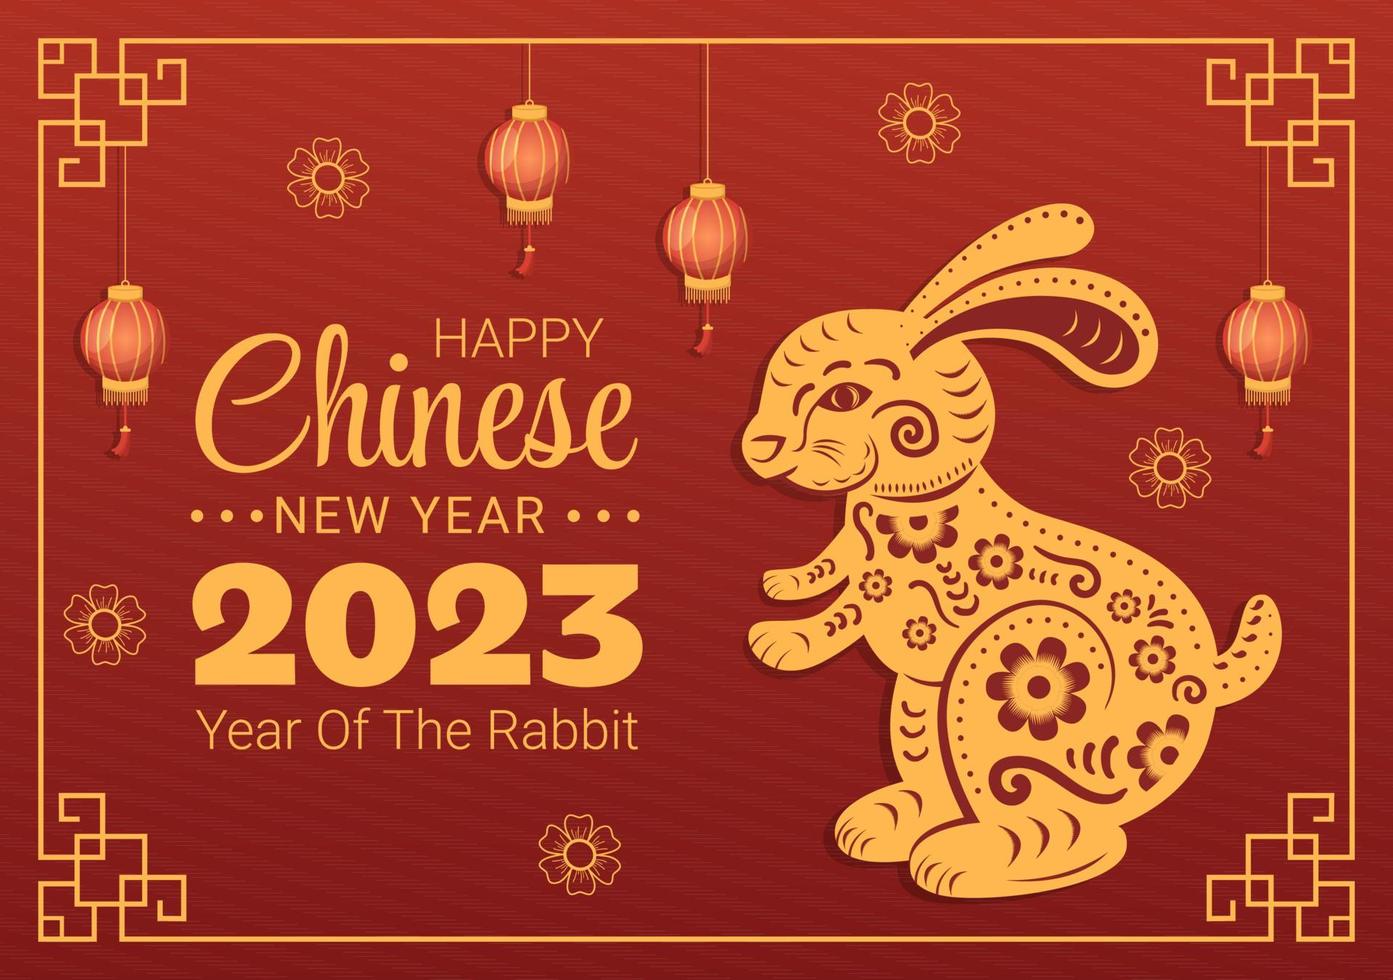 ano novo lunar chinês 2023 dia do modelo de signo do zodíaco coelho ilustração plana de desenhos animados desenhados à mão com flor, lanterna e fundo de cor vermelha vetor